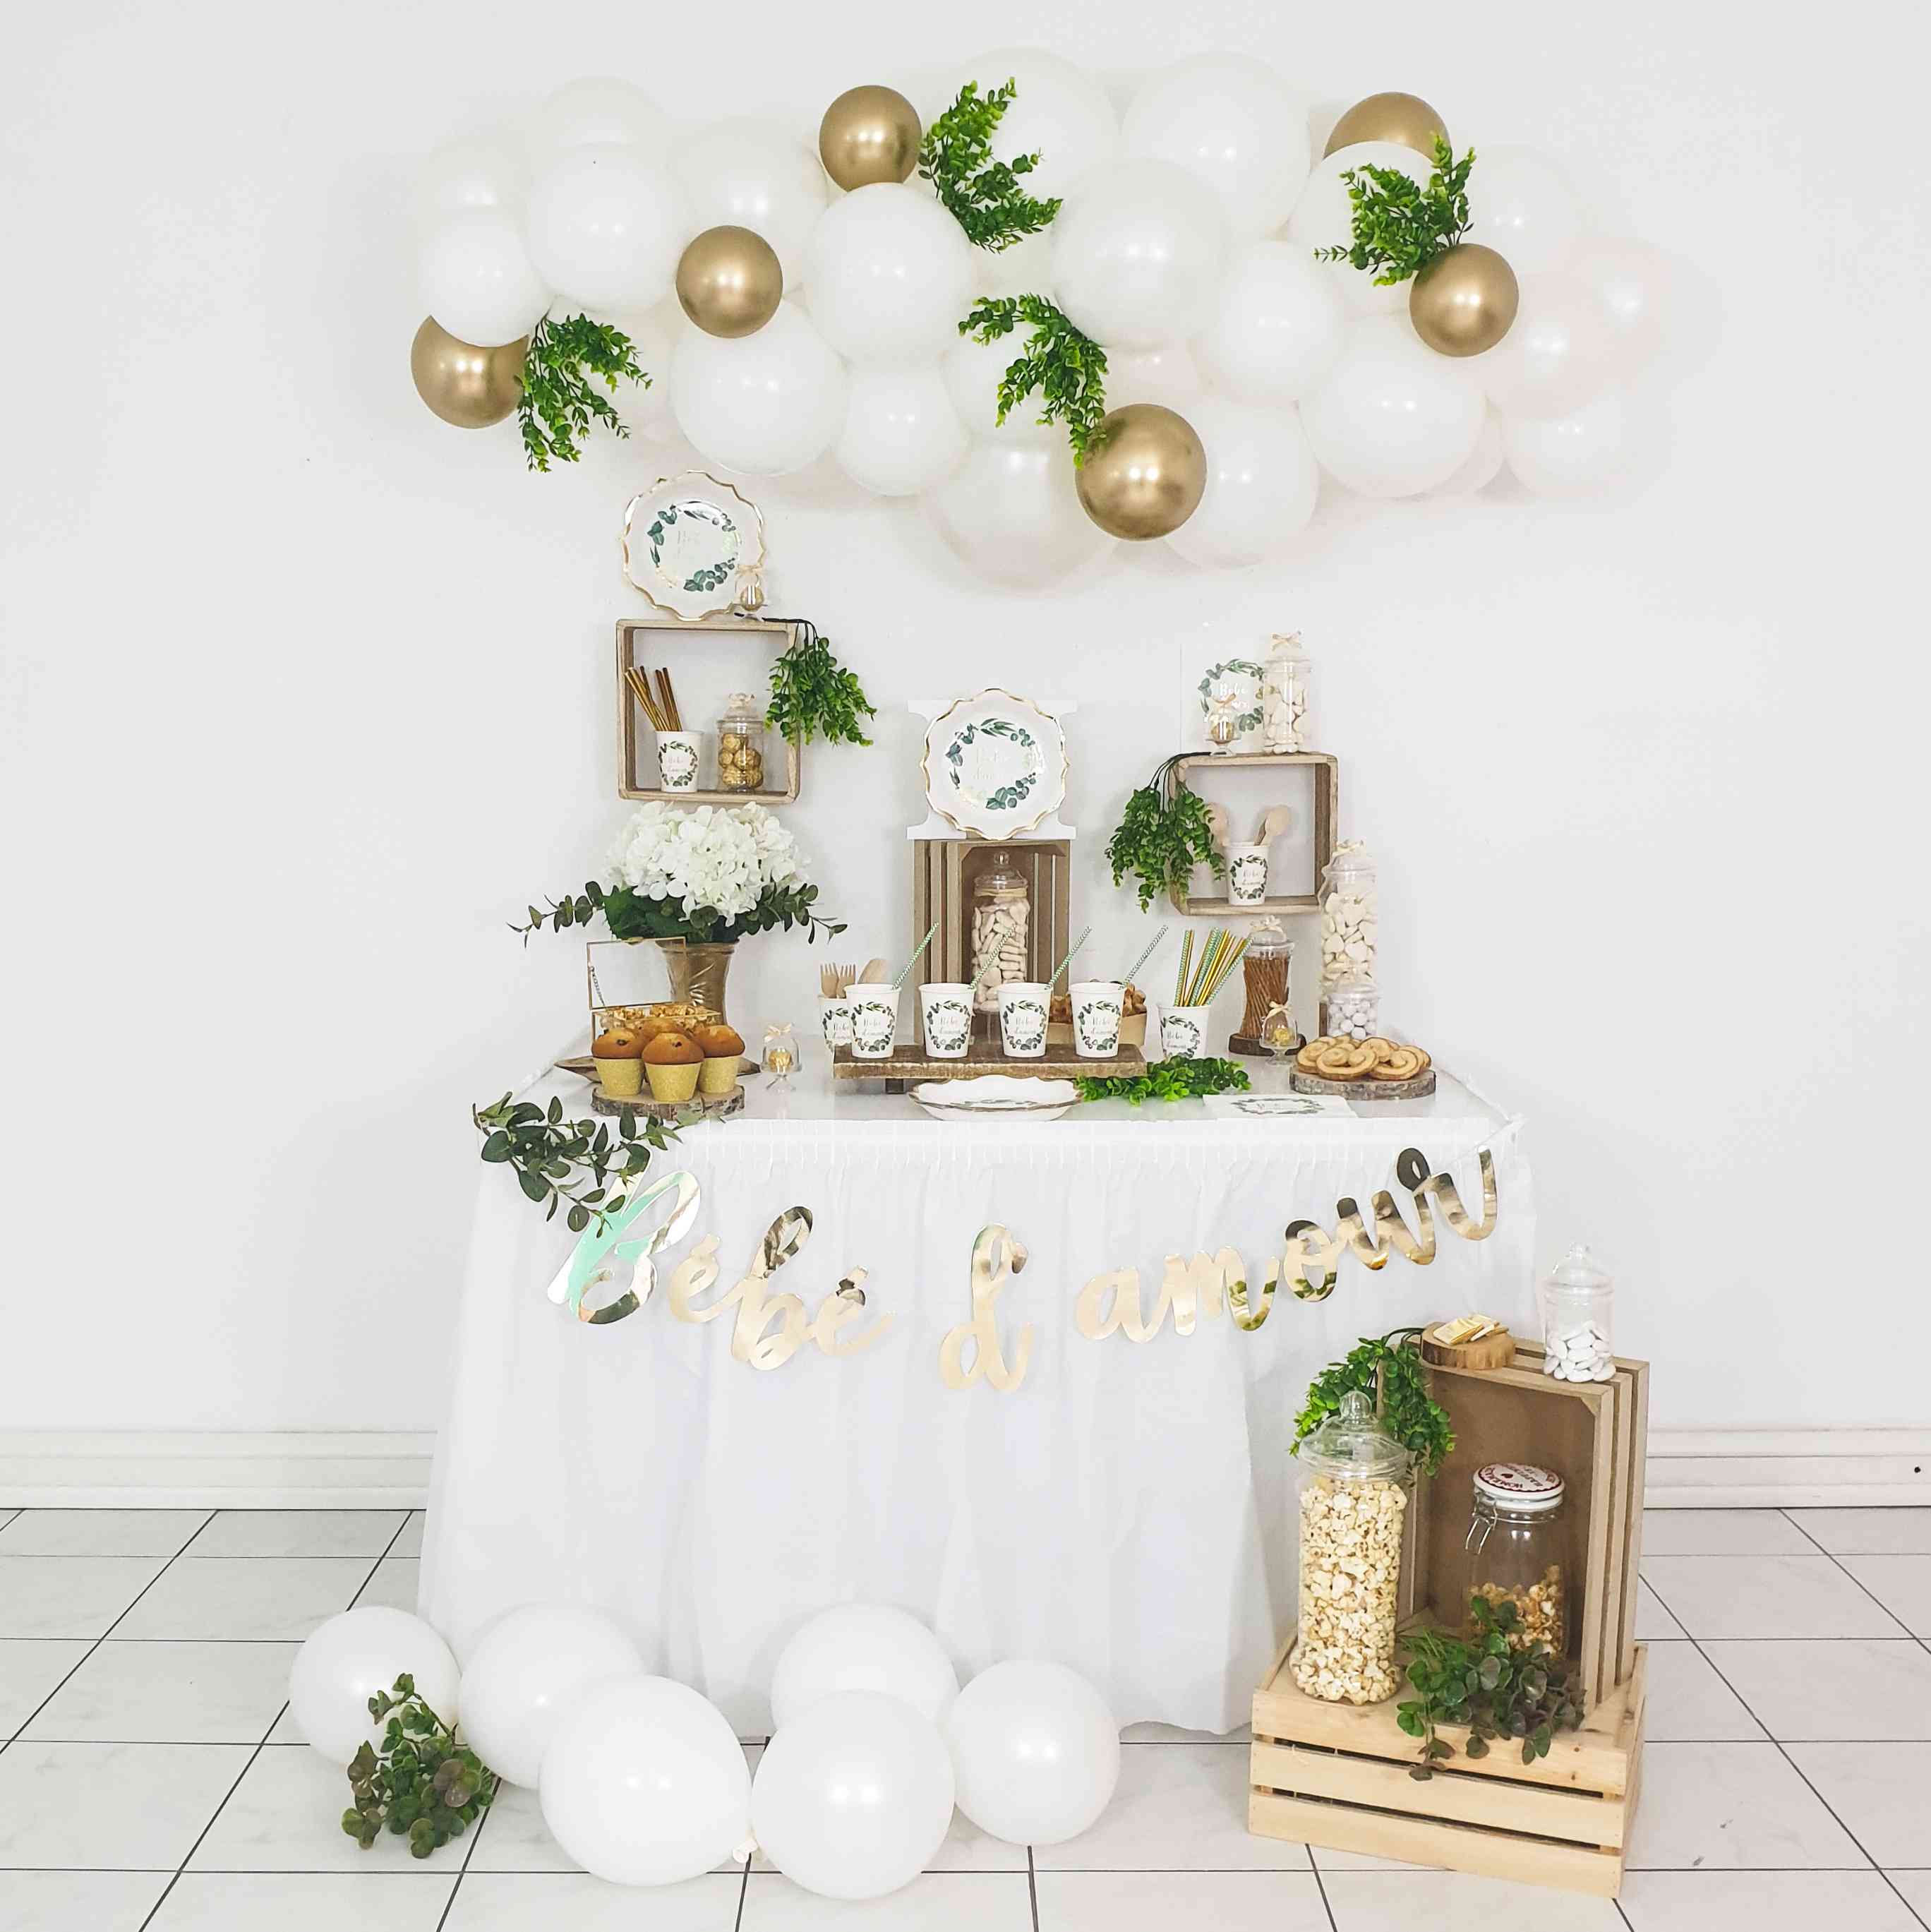 la collection baby shower bébé d'amour avec une jolie couronne d'eucalyptus et une décoration très sobre en blanc et doré chromé.